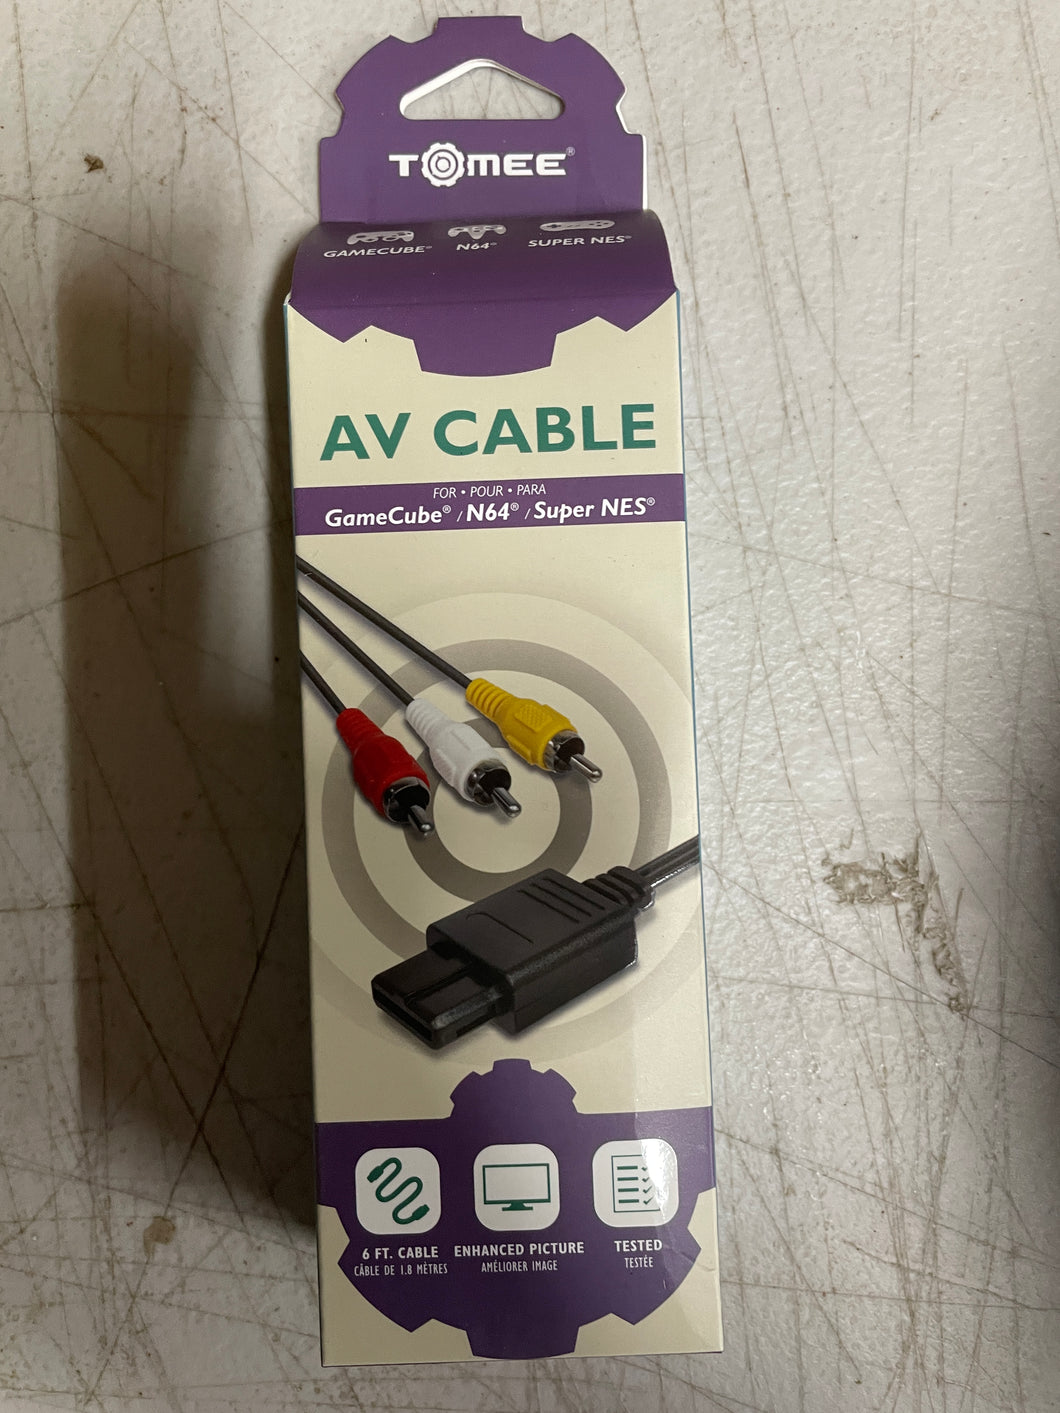 AV Cable for GameCube/N64/SNES